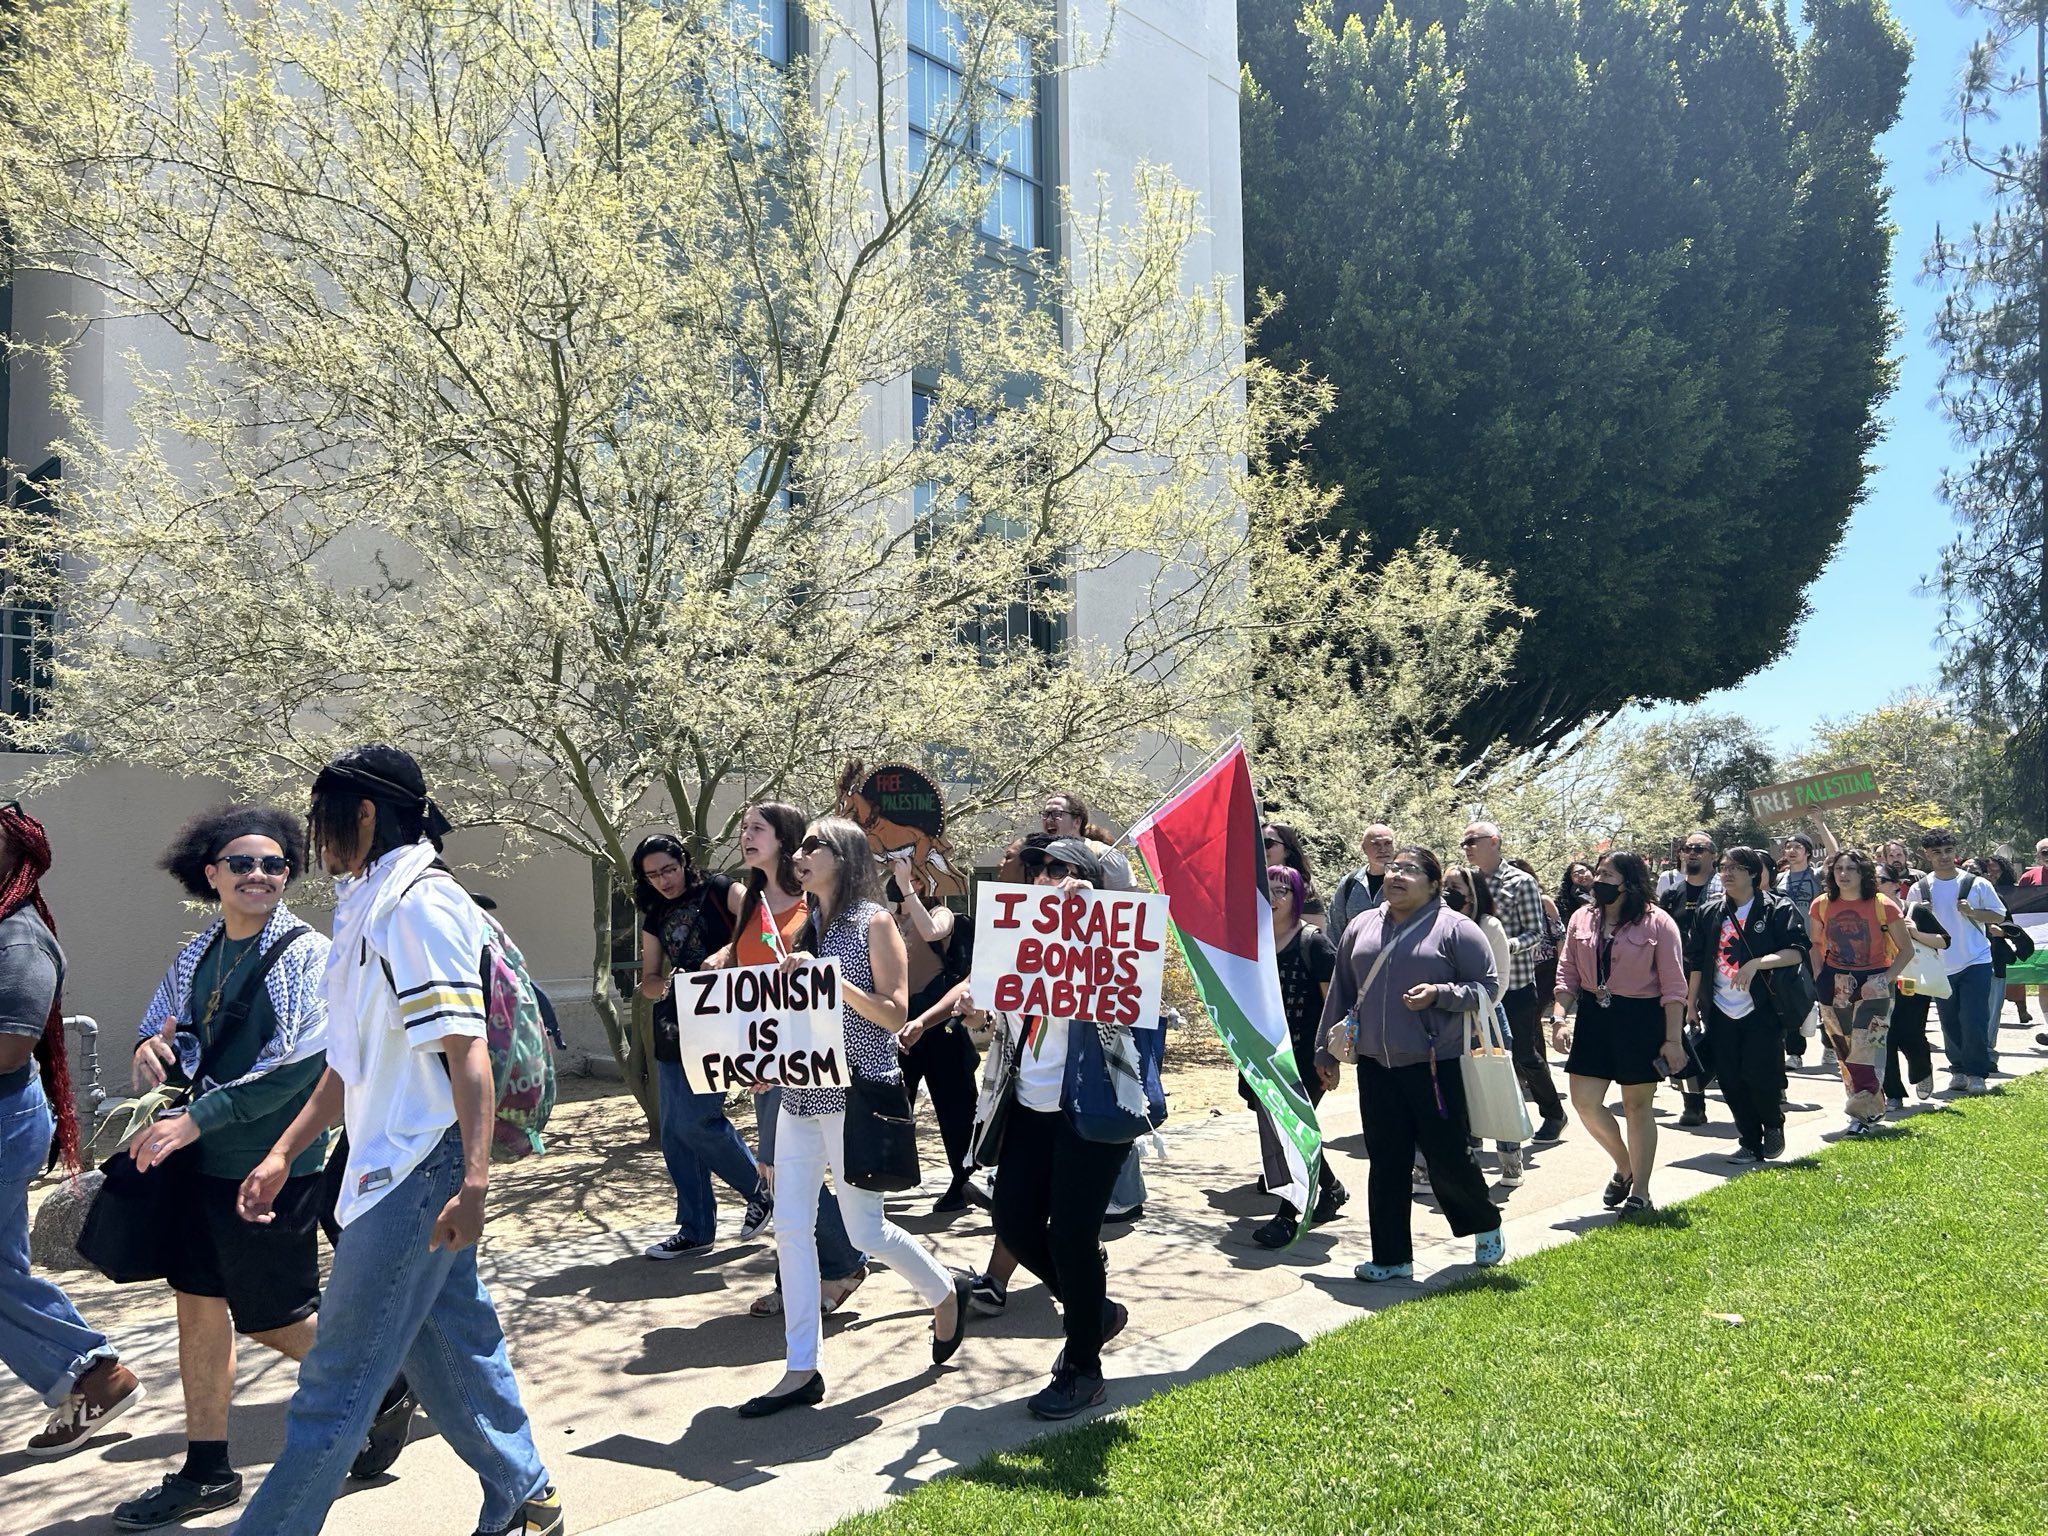 Un groupe de personnes défile en portant un drapeau palestinien et des pancartes indiquant que le sionisme est du fascisme et qu'Israël bombarde des bébés.